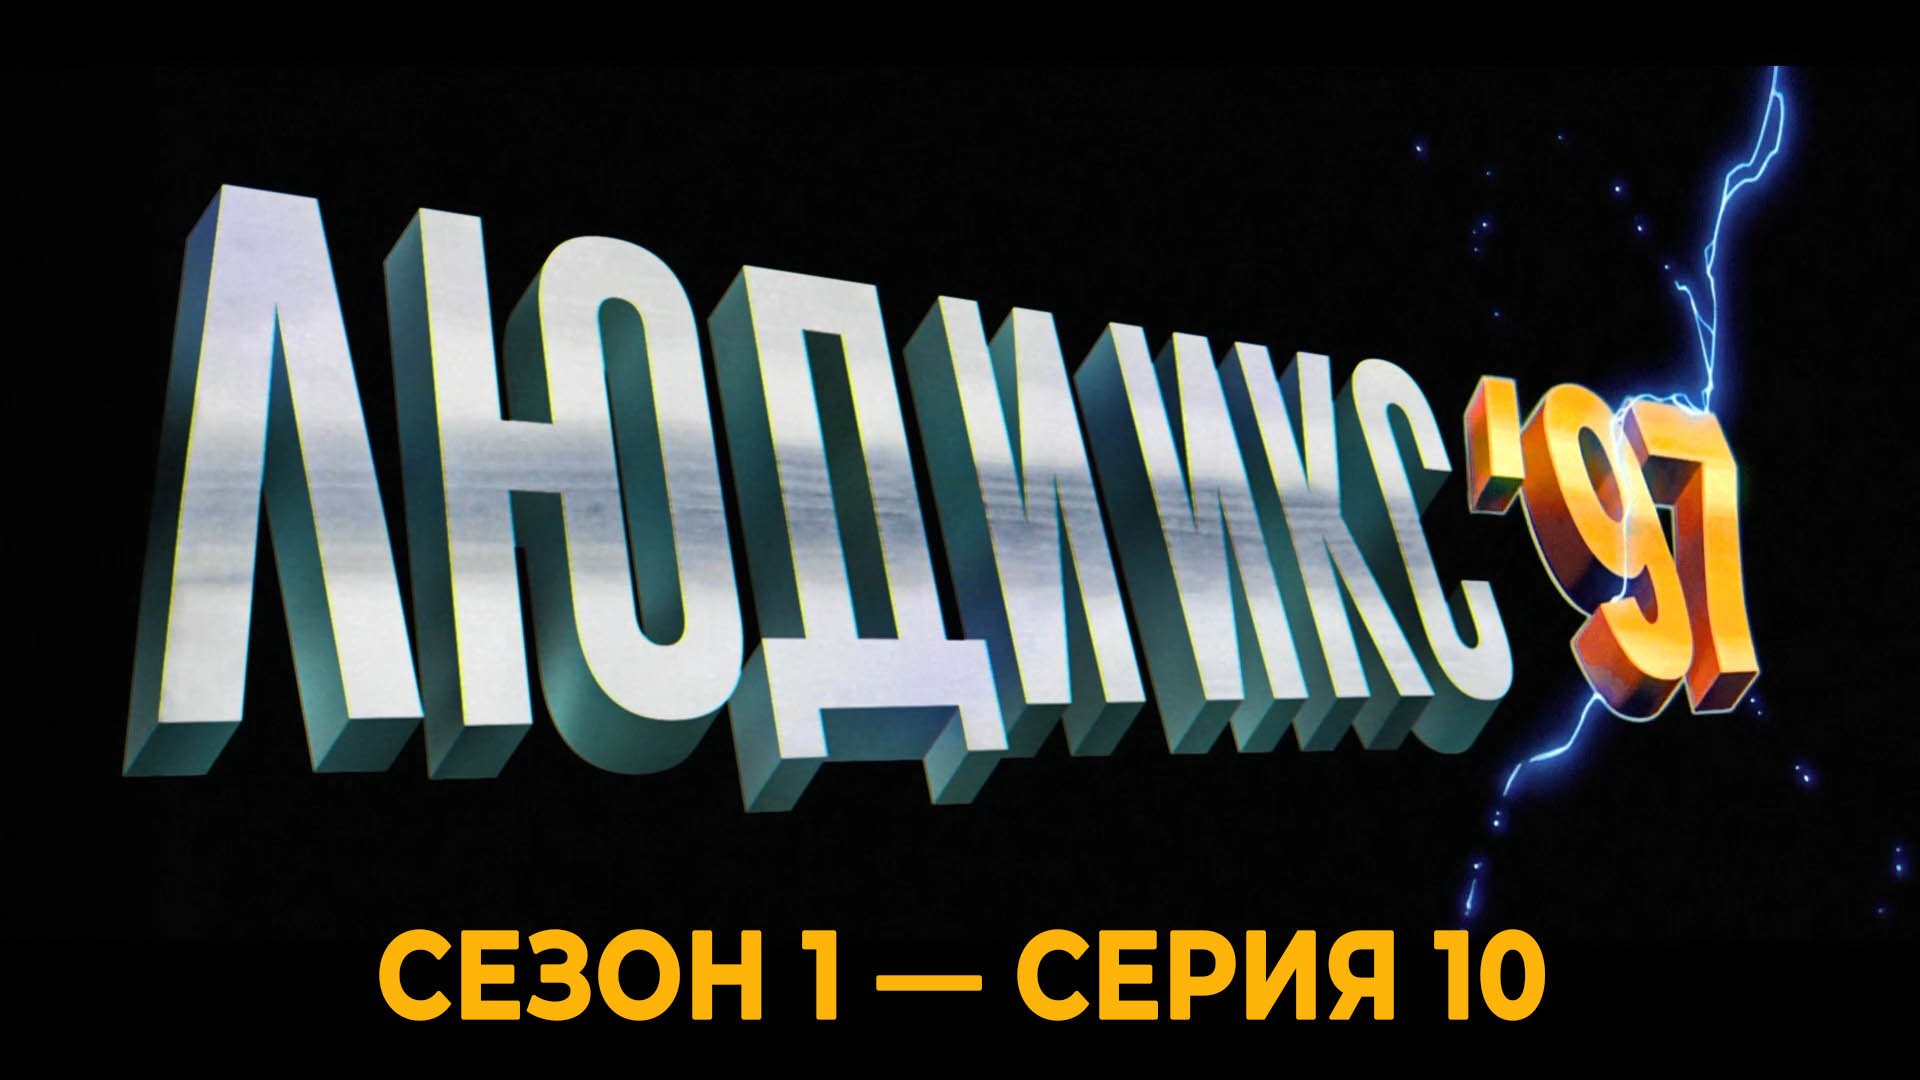 Сериал «Люди Икс '97»: Сезон 1 - серия 10 (финальная)